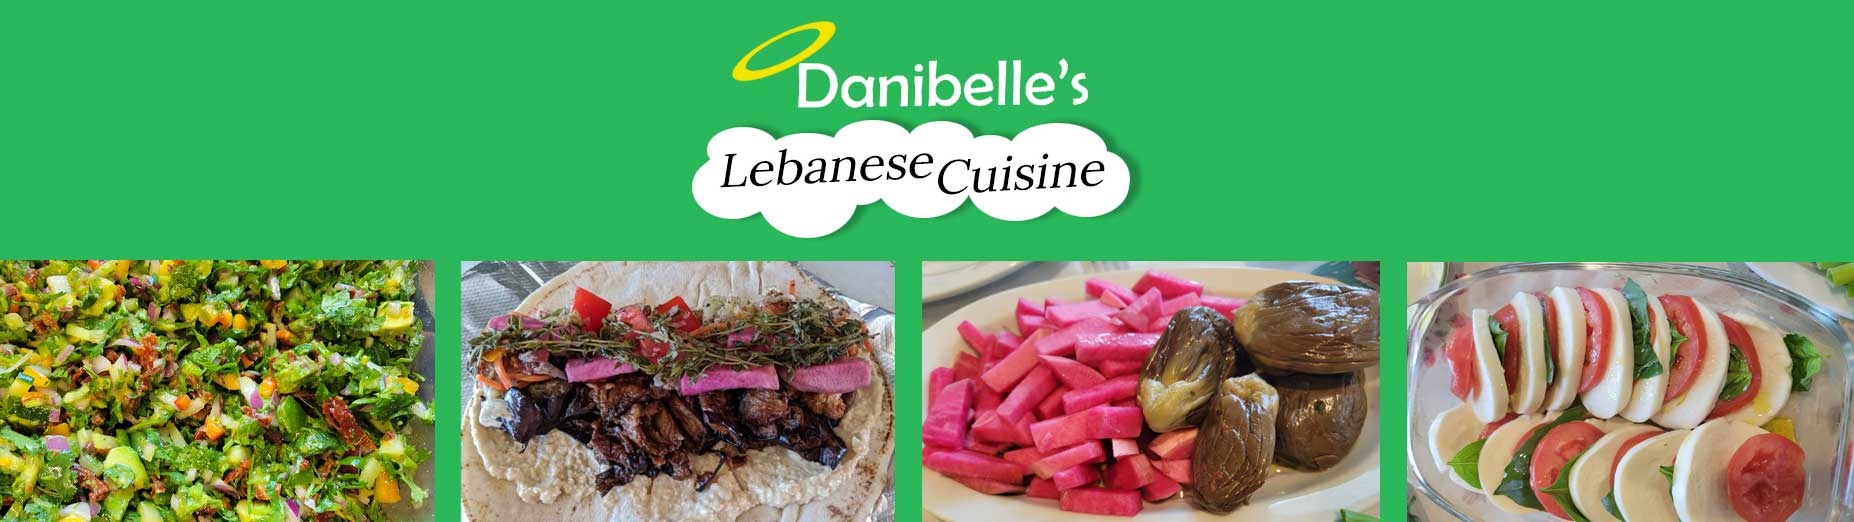 Danibelle's Lebanese Cuisine